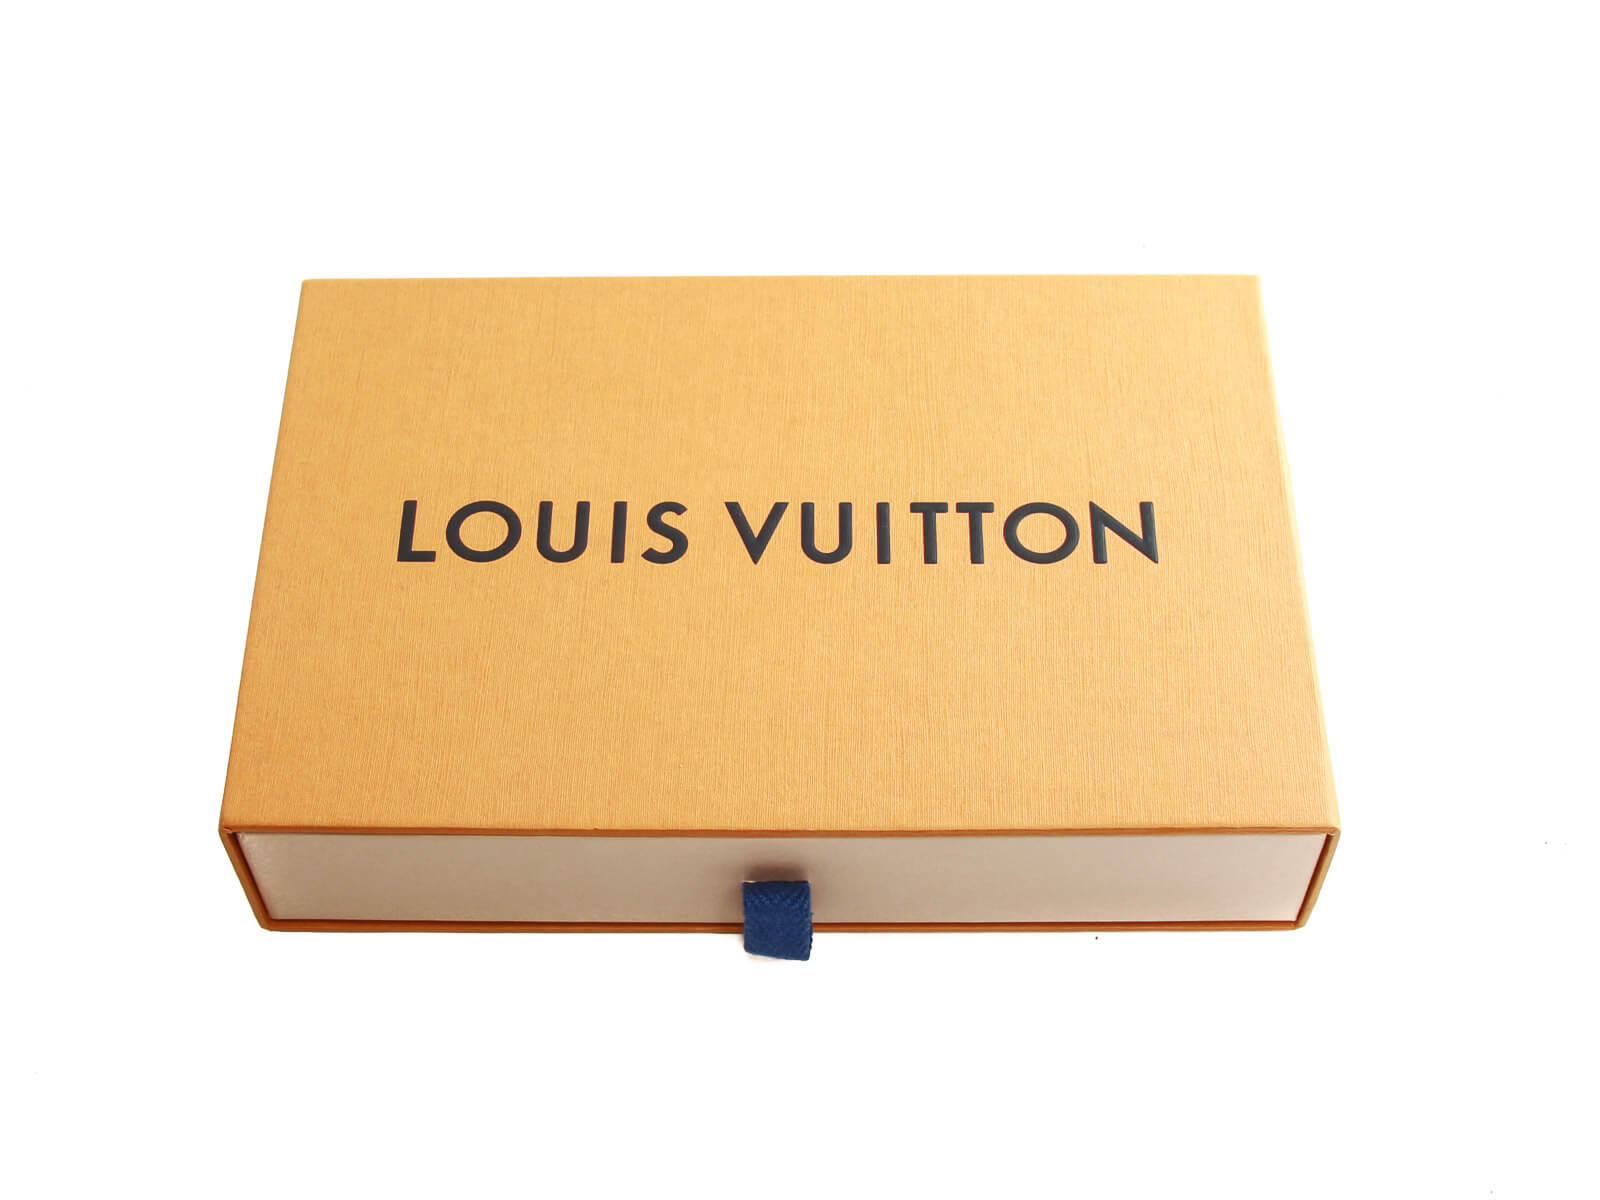 Shop Louis Vuitton Emilie wallet (M60697, M61289) by lifeisfun